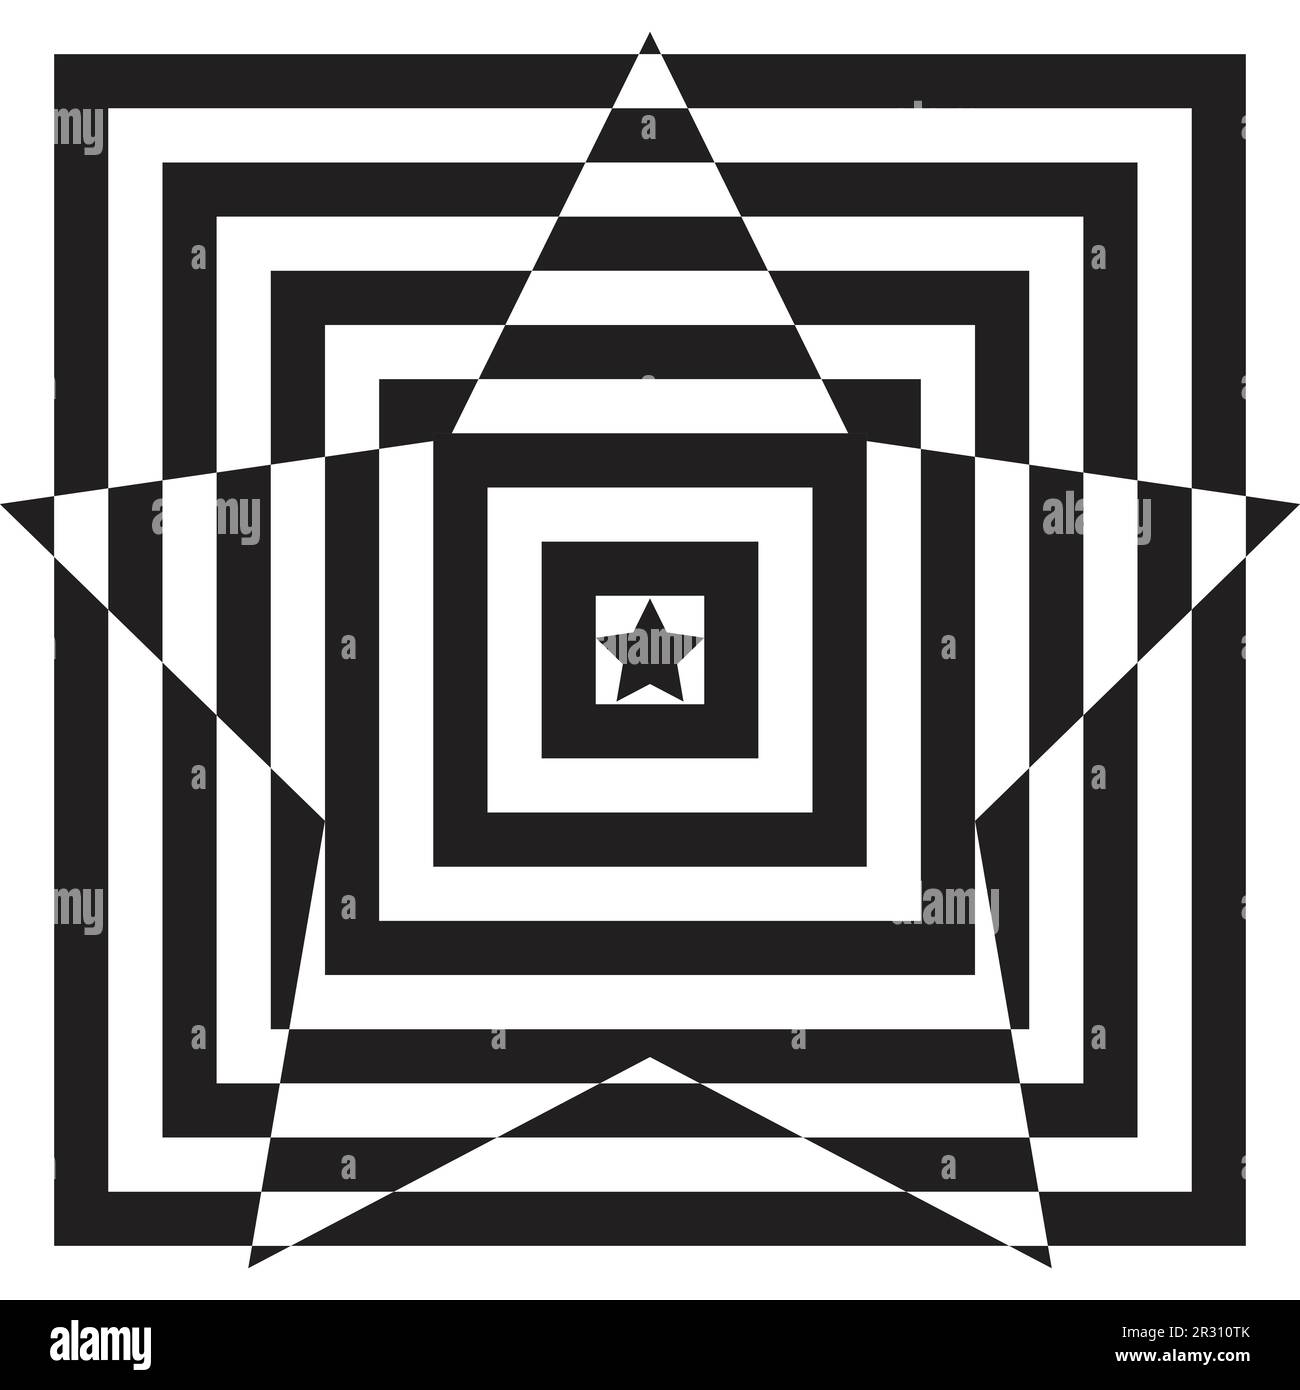 Hintergrund mit abstrakten geometrischen Mustern und schwarzen und weißen Stern- und Quadratformen Stock Vektor